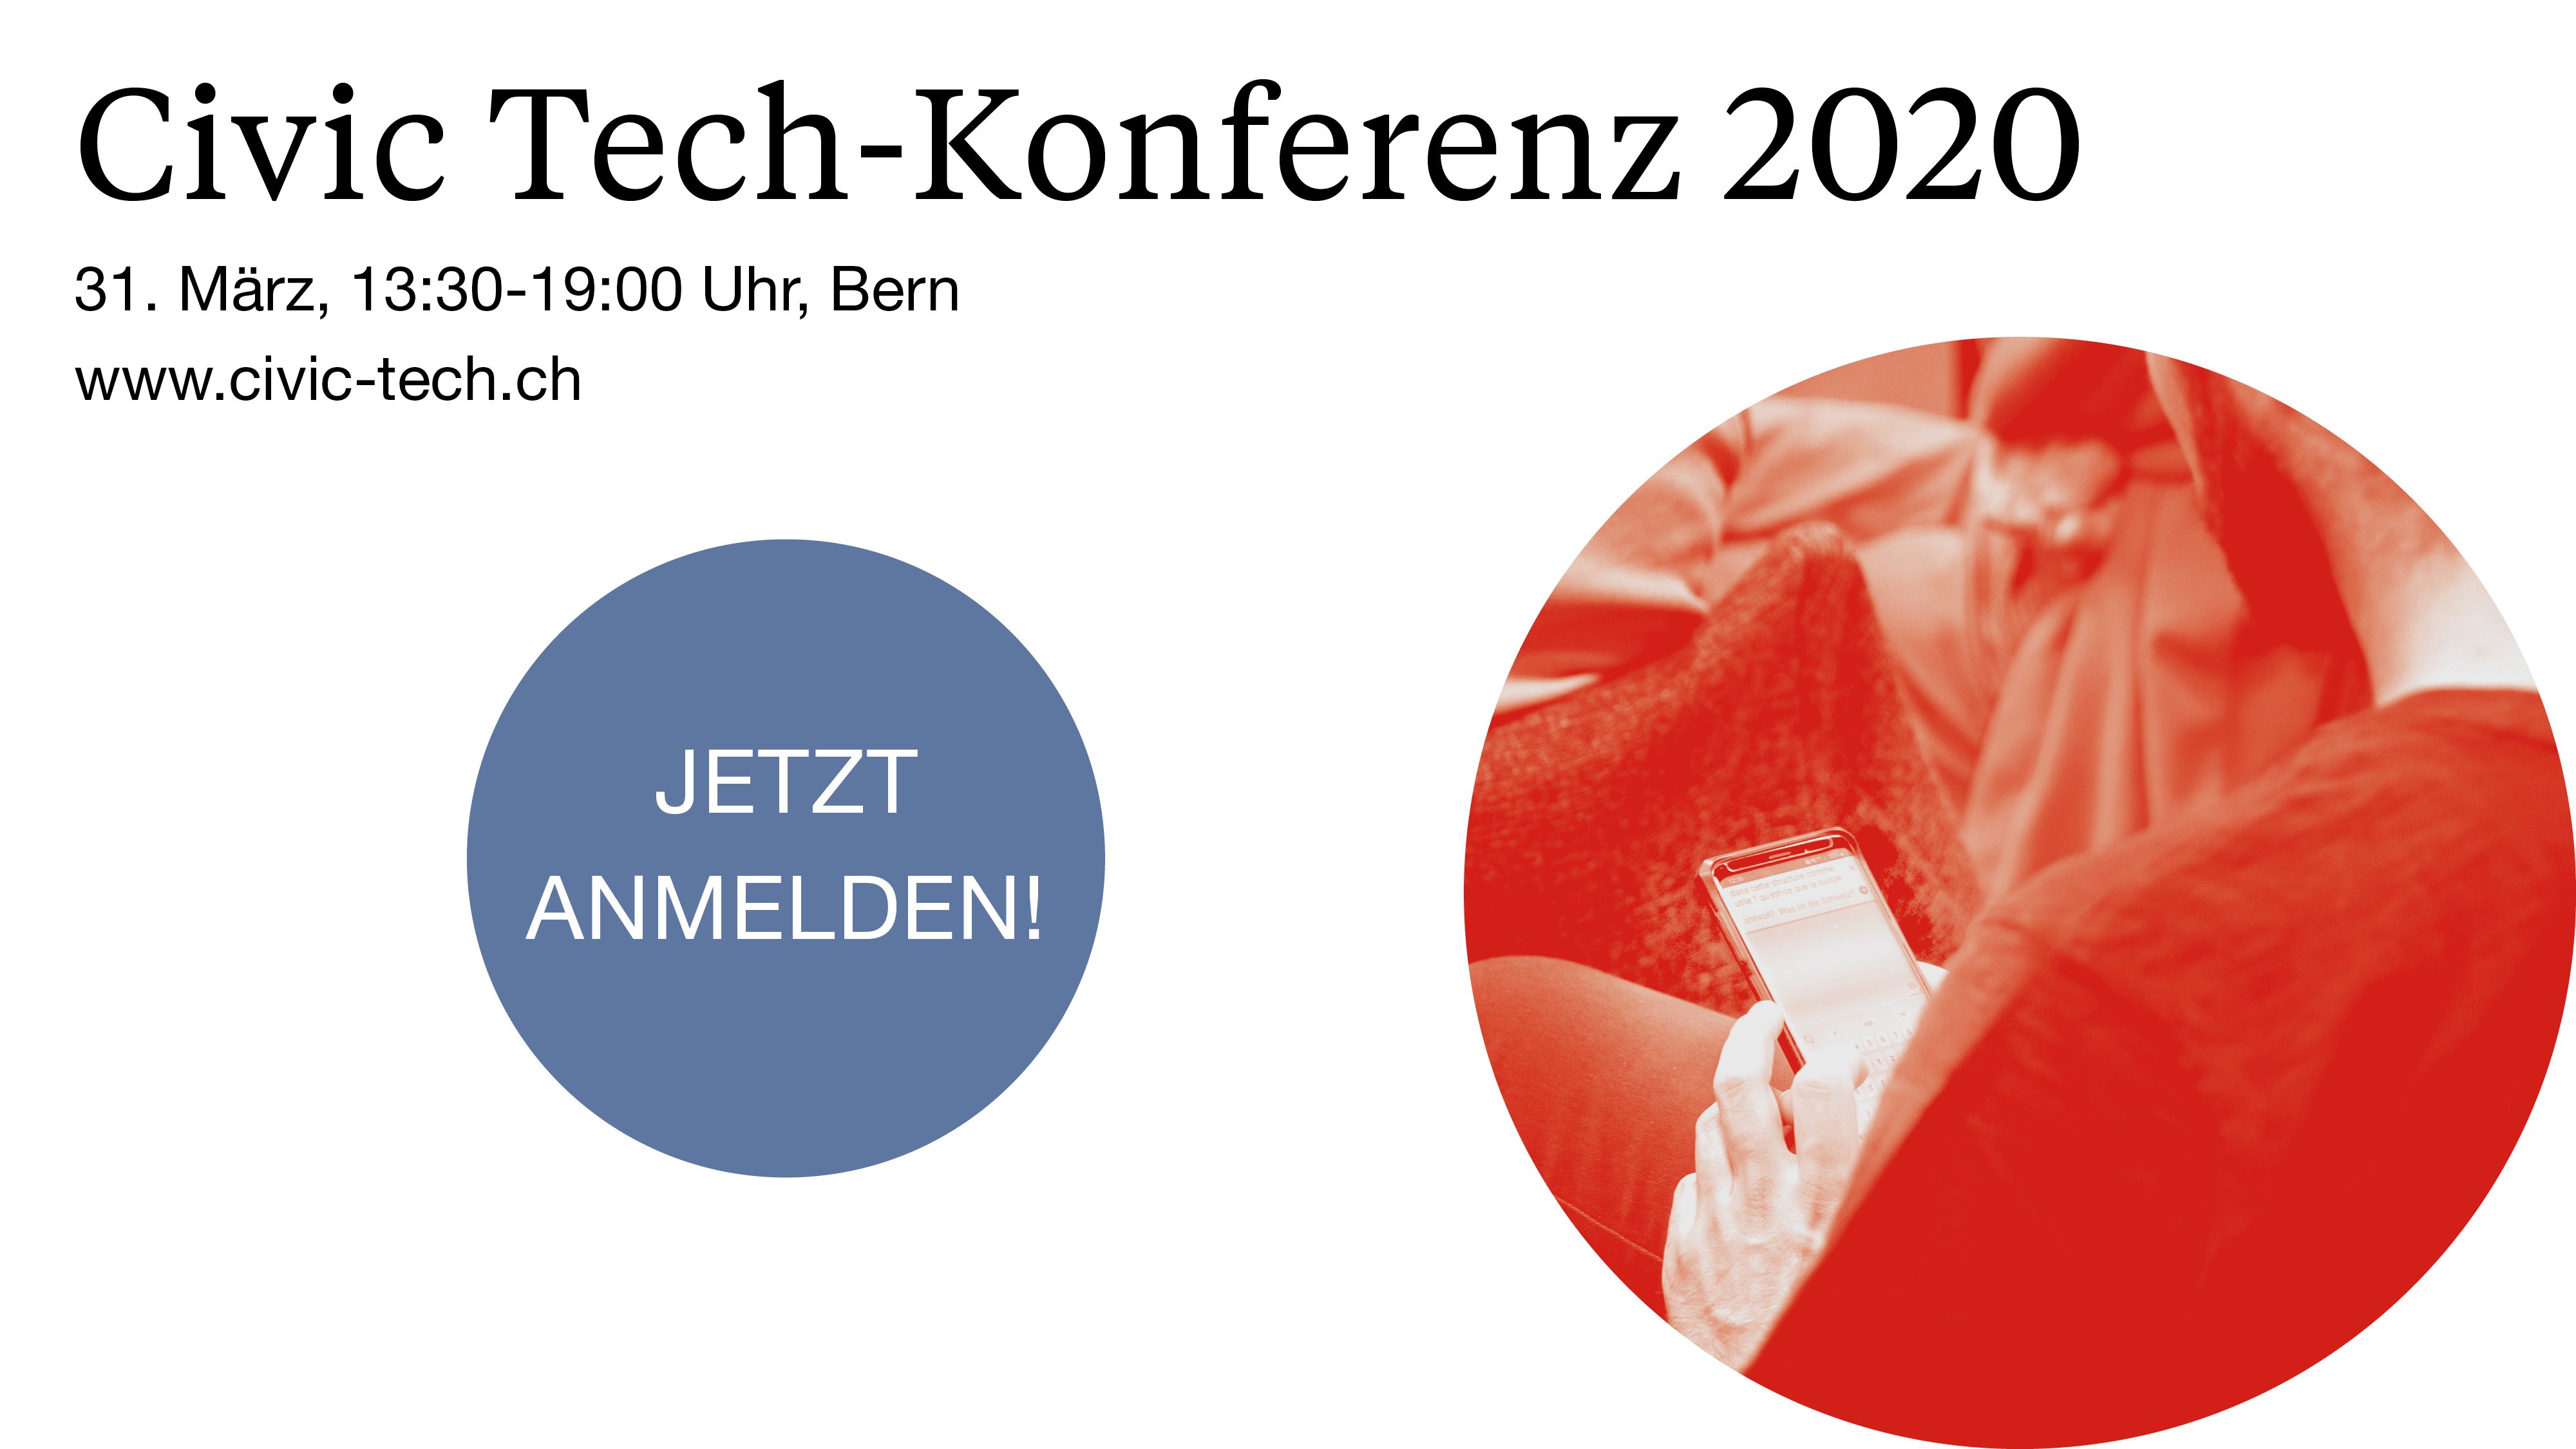 Civic Tech-Konferenz 2020